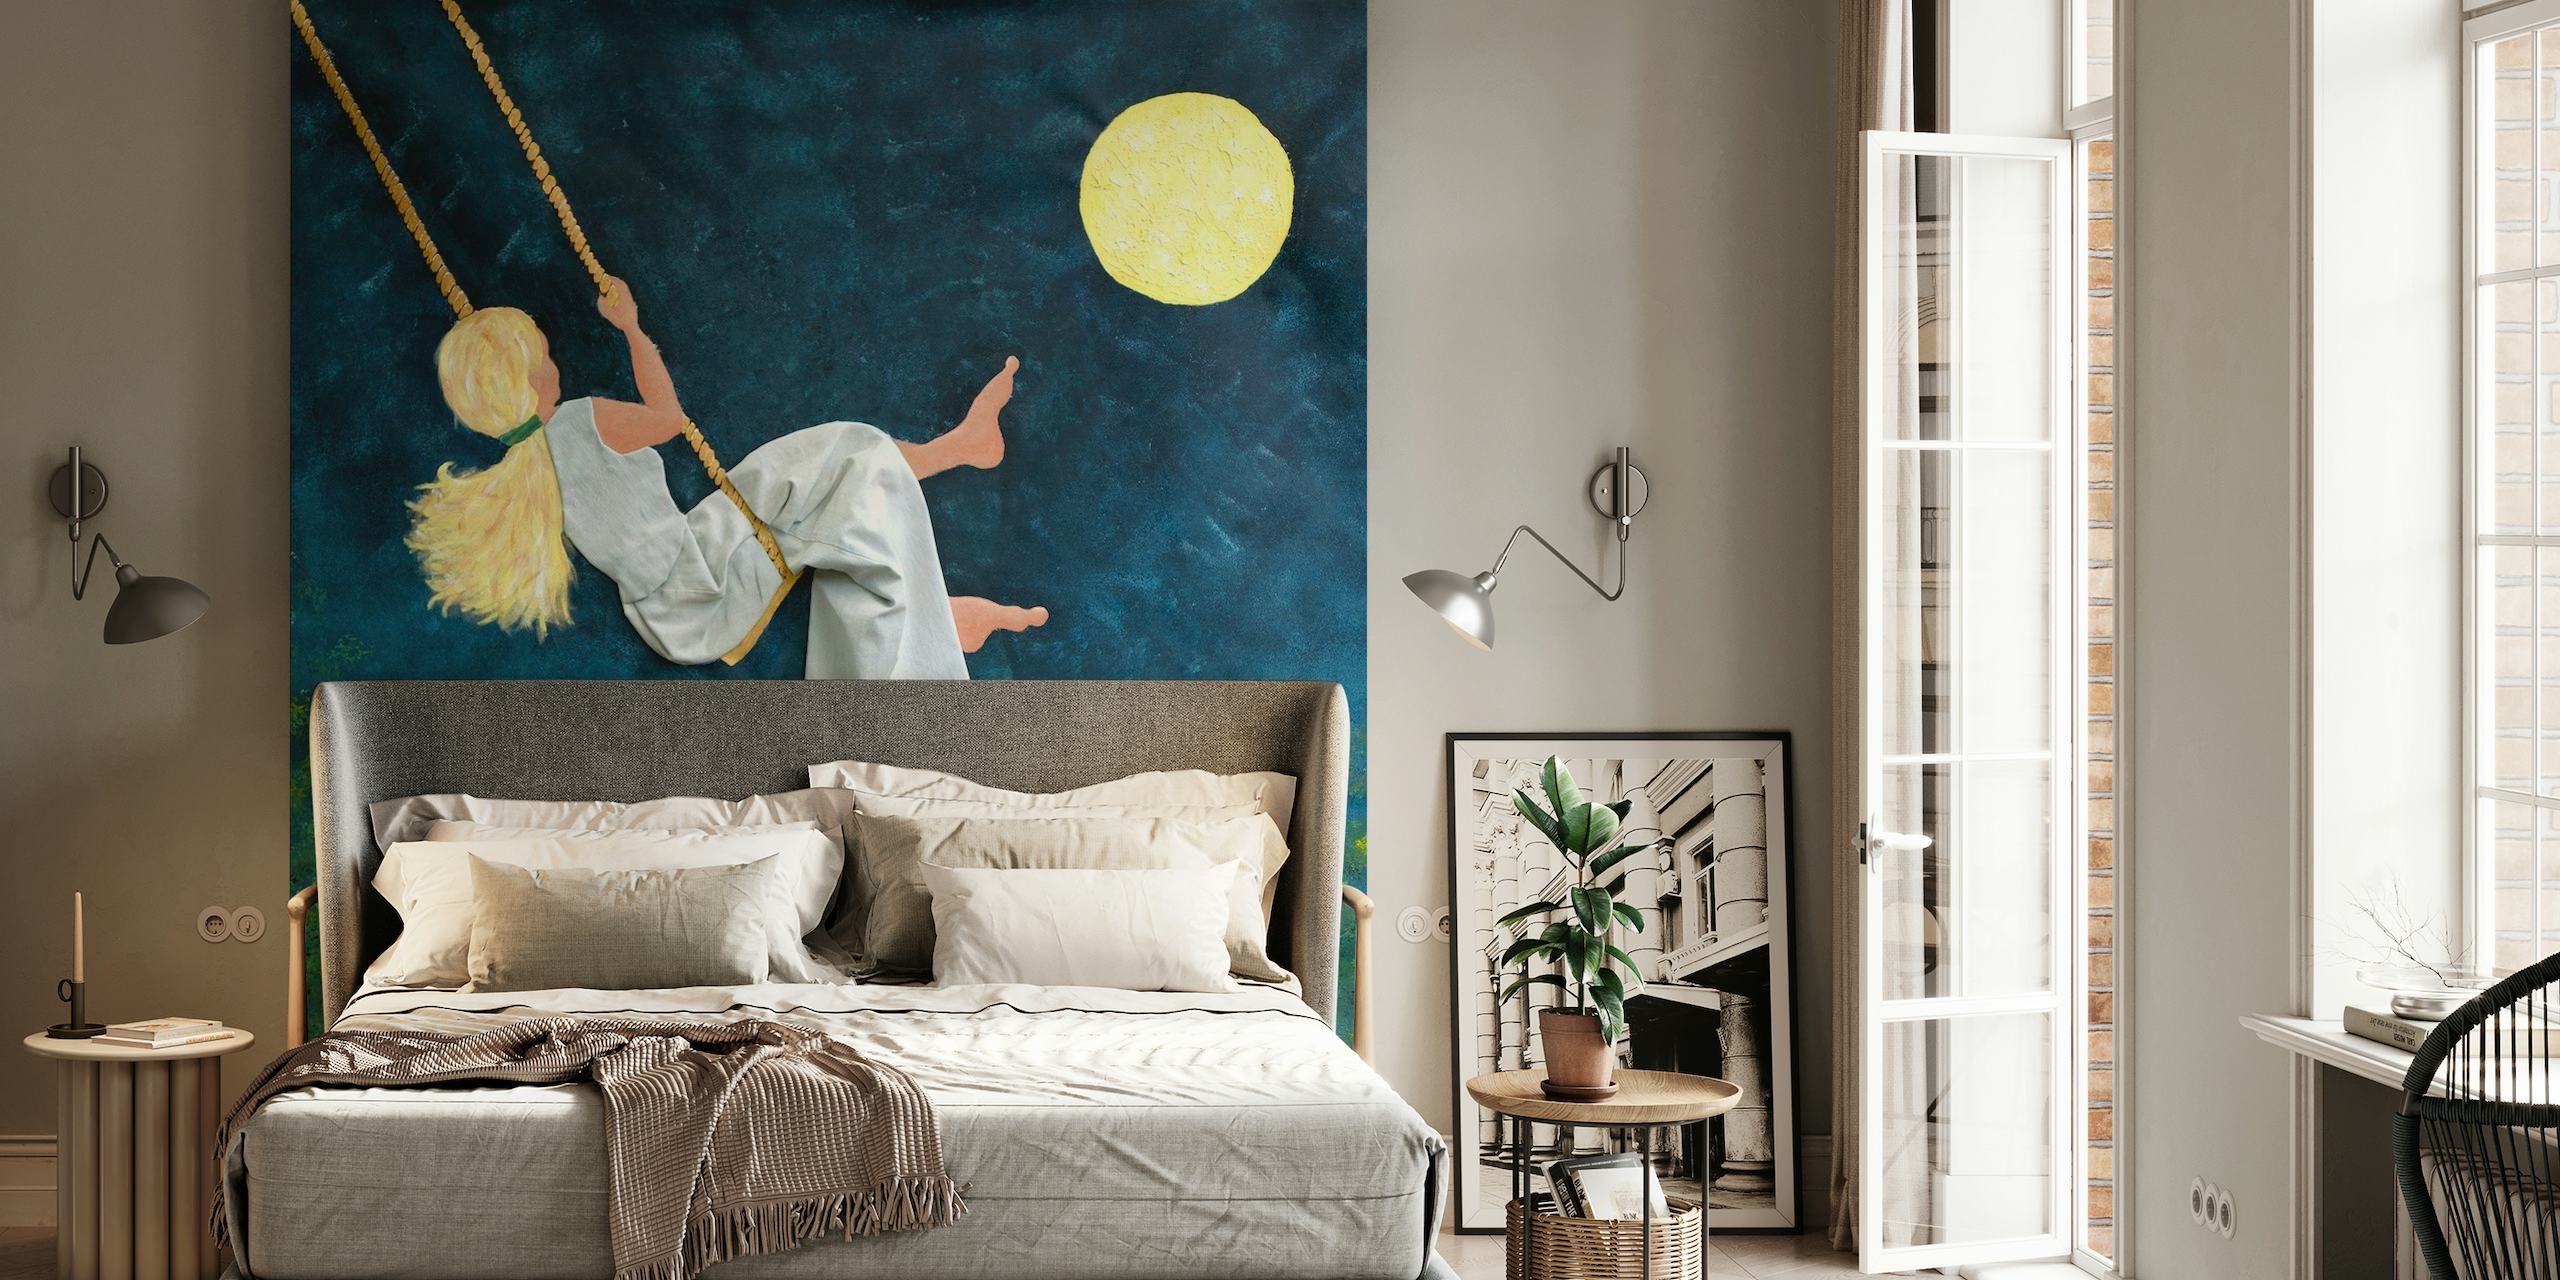 Menina balançando em direção à lua em um fotomural vinílico de parede de noite estrelada